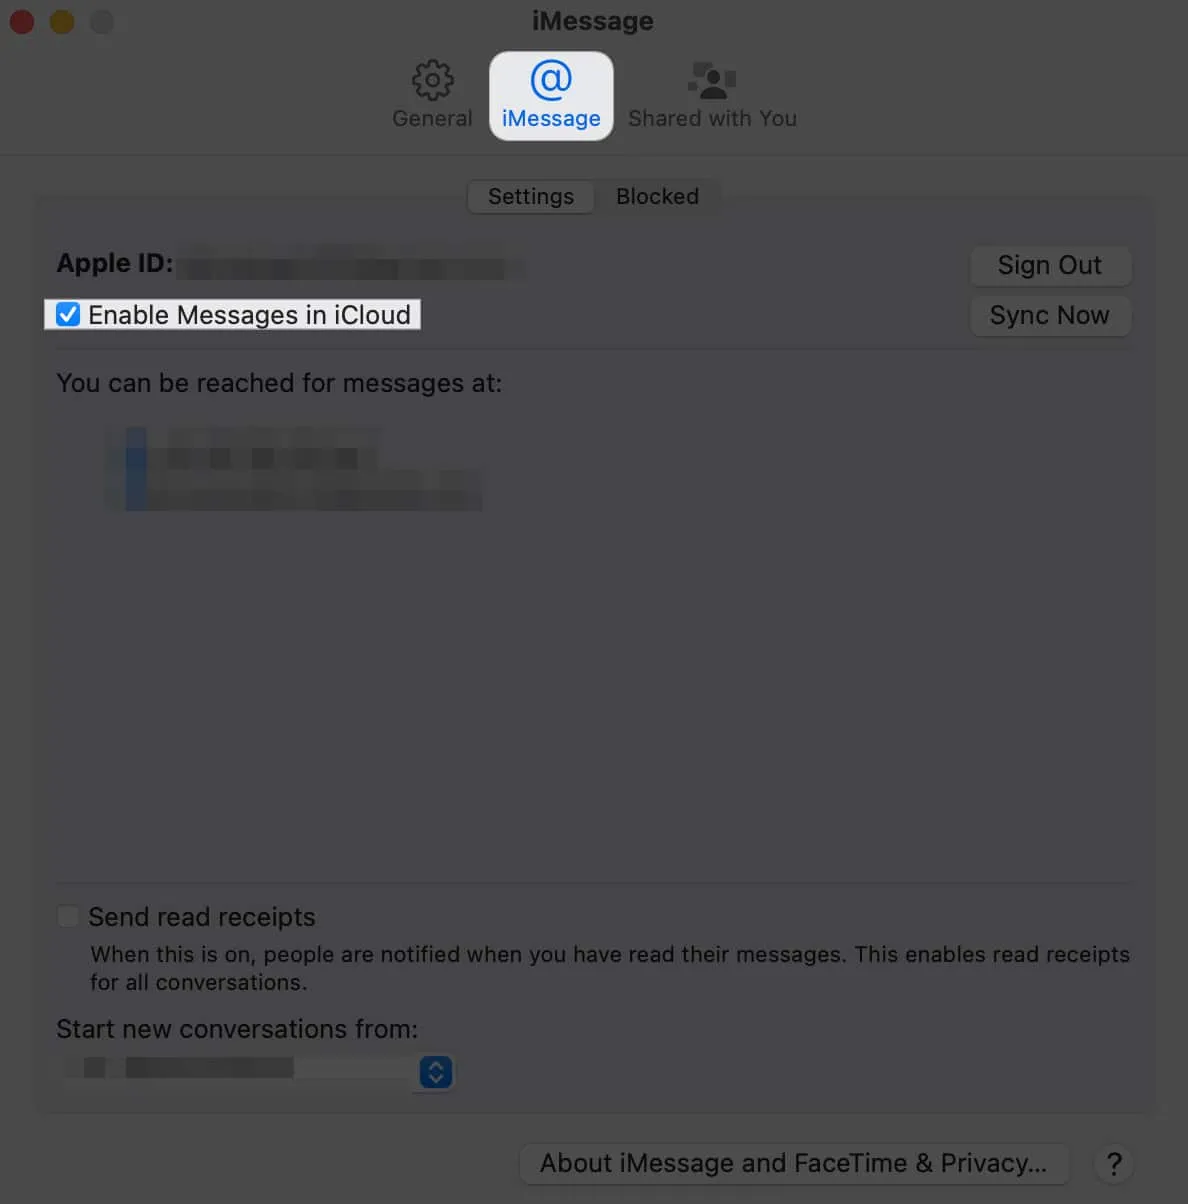 Haga clic en iMessage, habilitar mensajes en iCloud